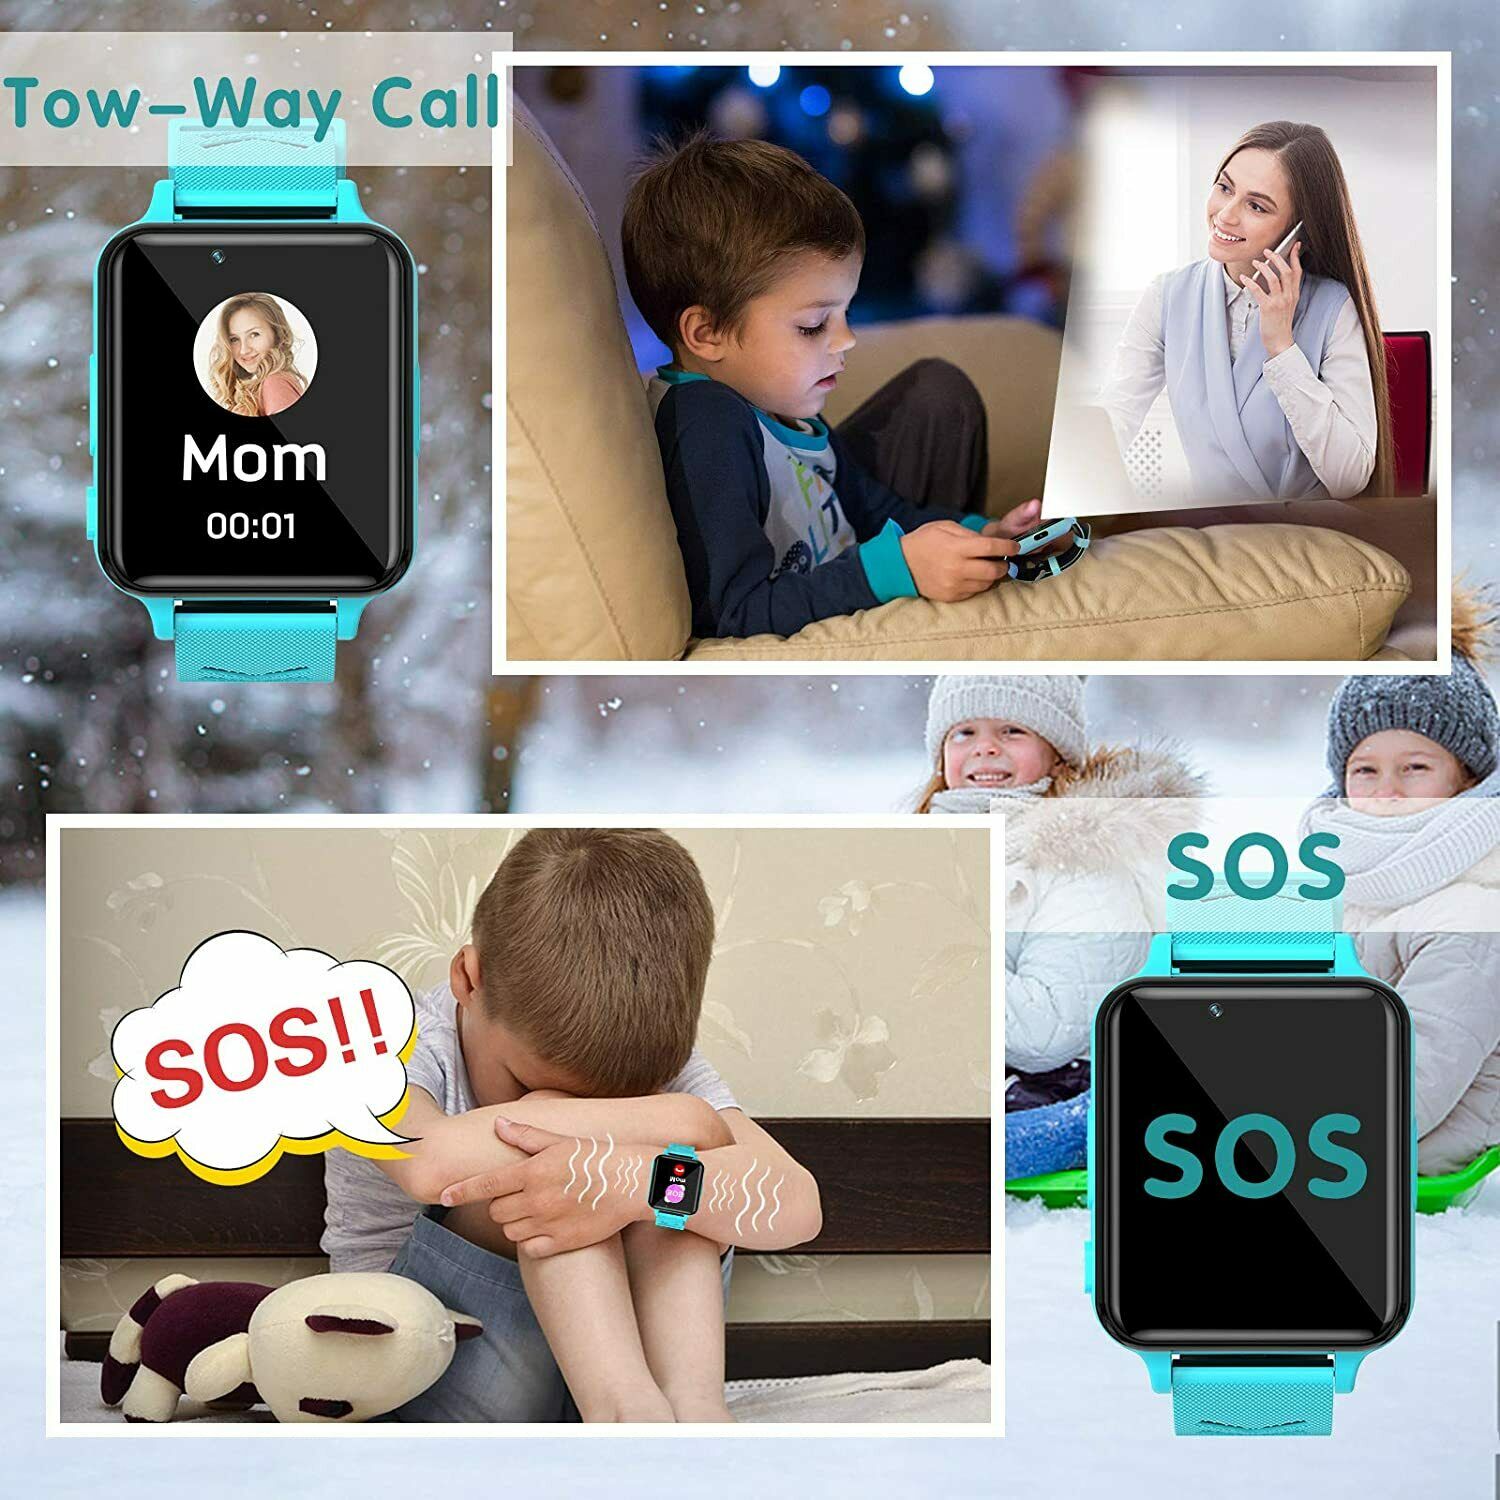 INIUPO Smartwatch per bambini ragazze Gioco telefono Smart Watch Rosa